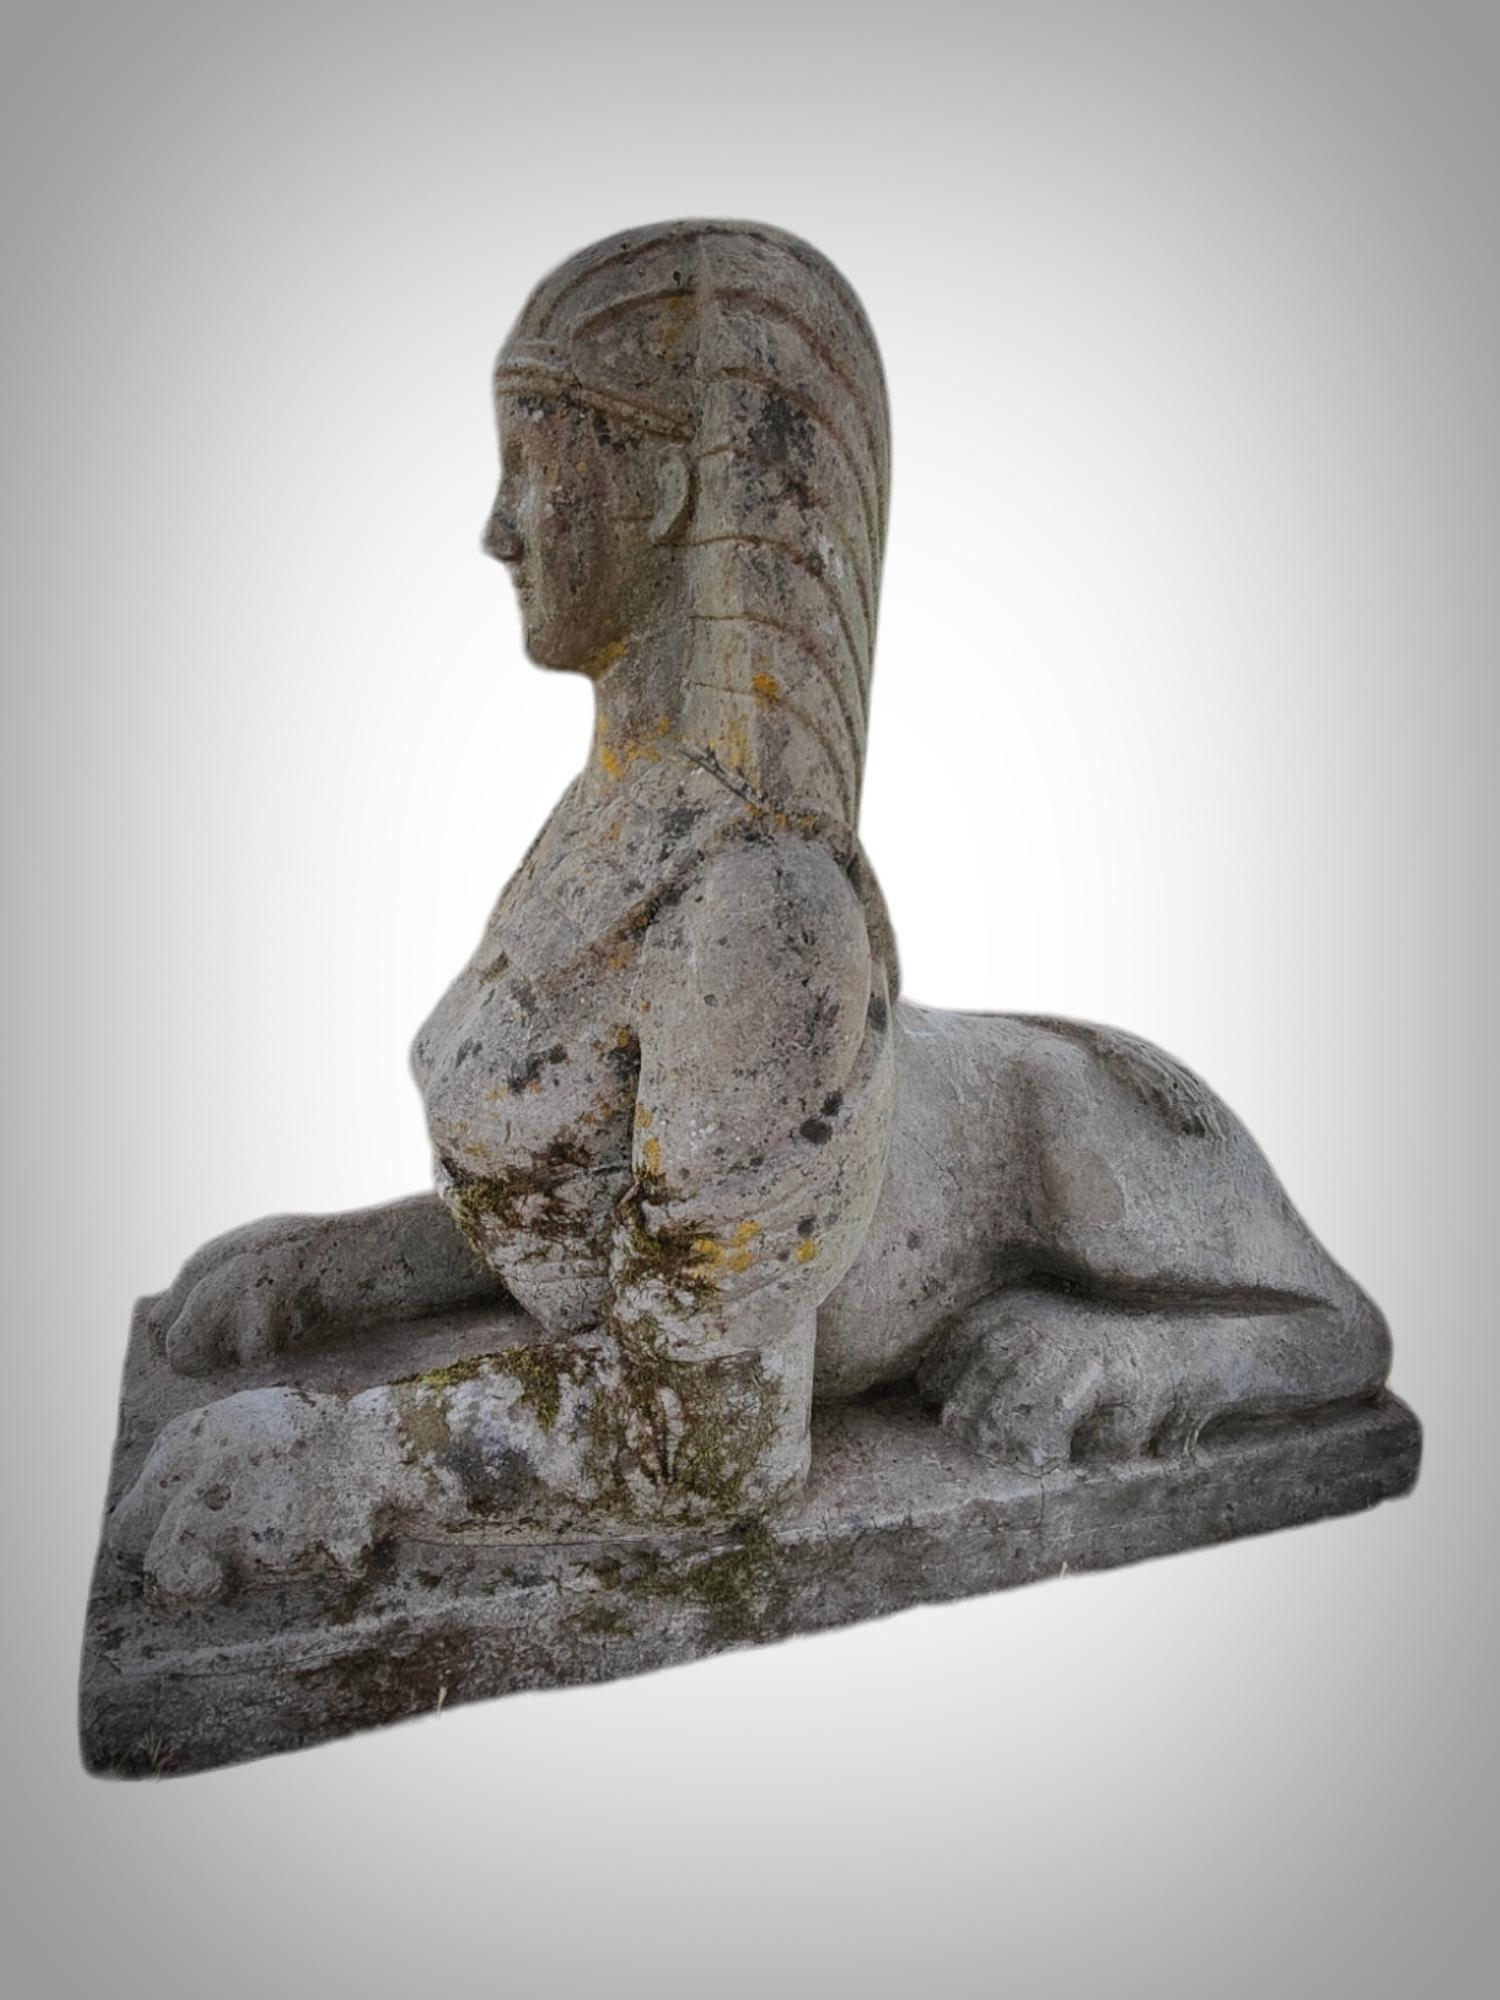 Paire de sphinx italiens des années 20 art déco
Paire de sphinx italiens très décoratifs du début des années 1920. En pierre ou similaire. En bon état général. Avec des signes du passage du temps. Dimensions : 95x41x86cm